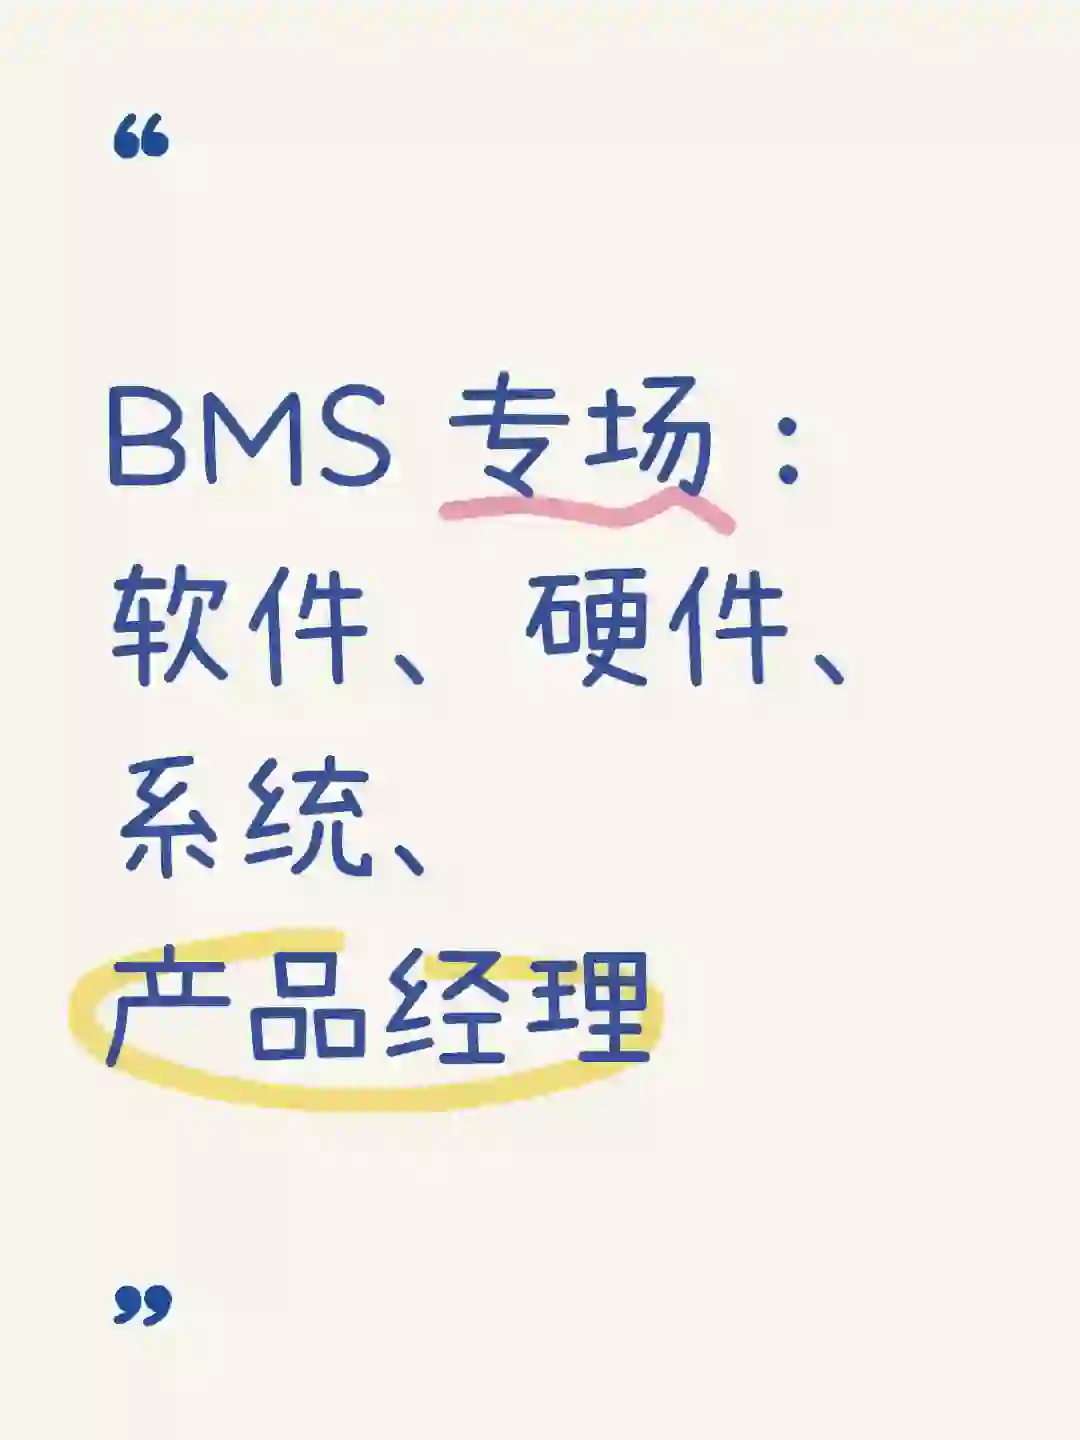 BMS 专场：软件、硬件、系统、产品经理